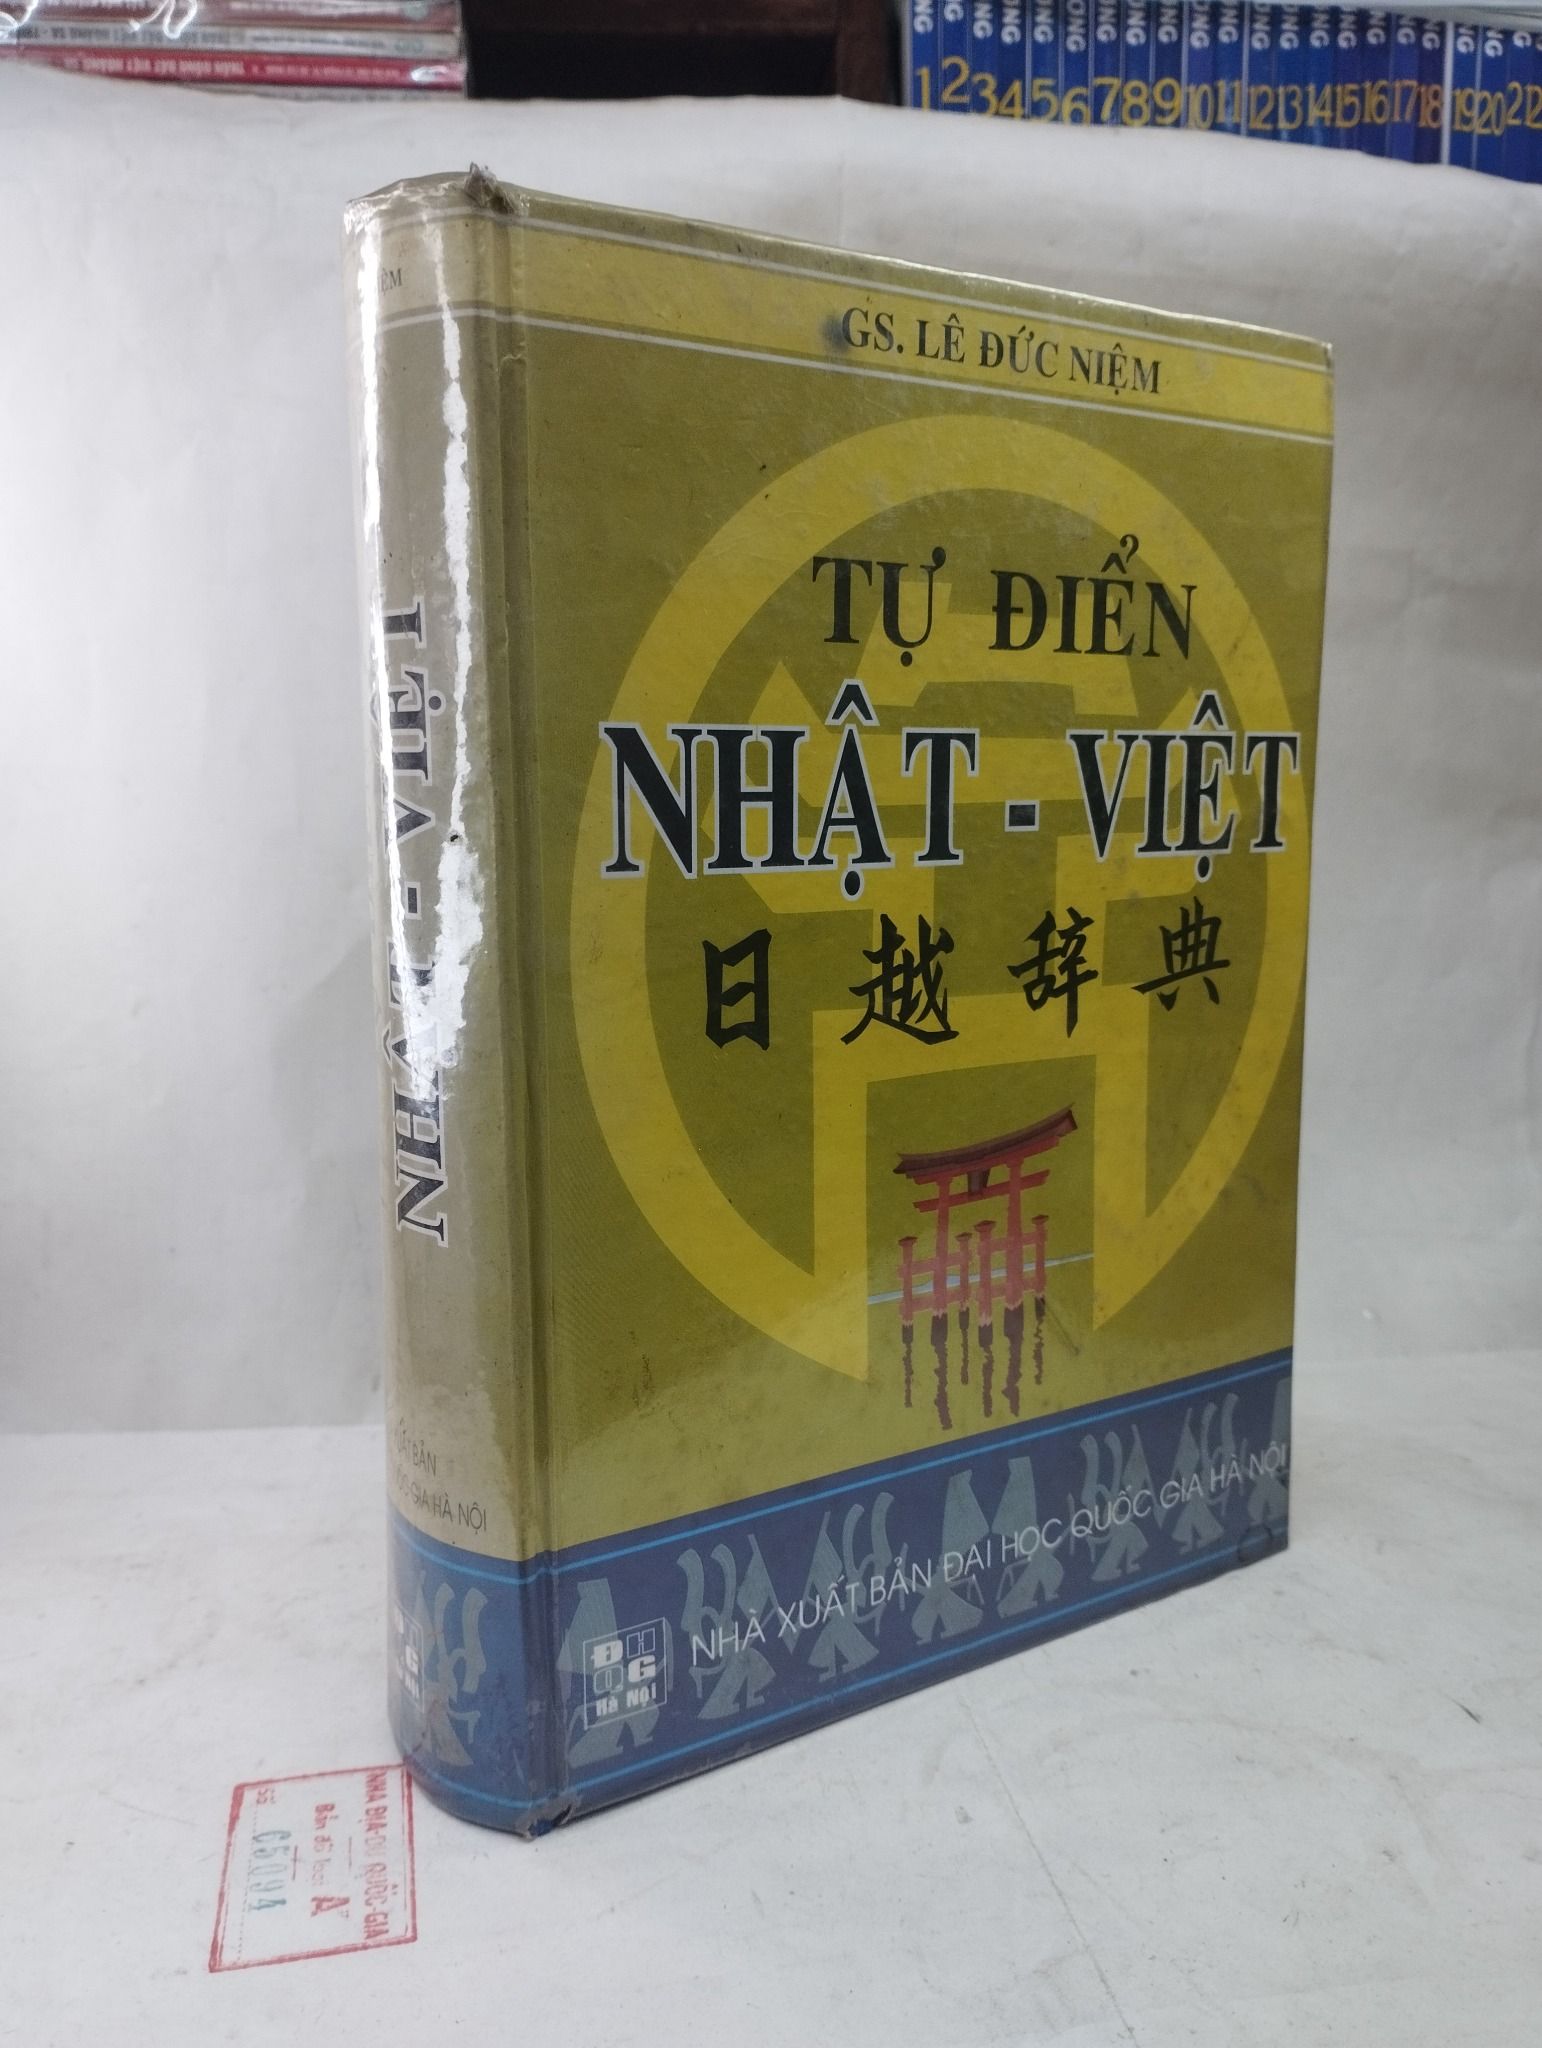  Tự điển Nhật - Việt - GS. Lê Đức Niệm 